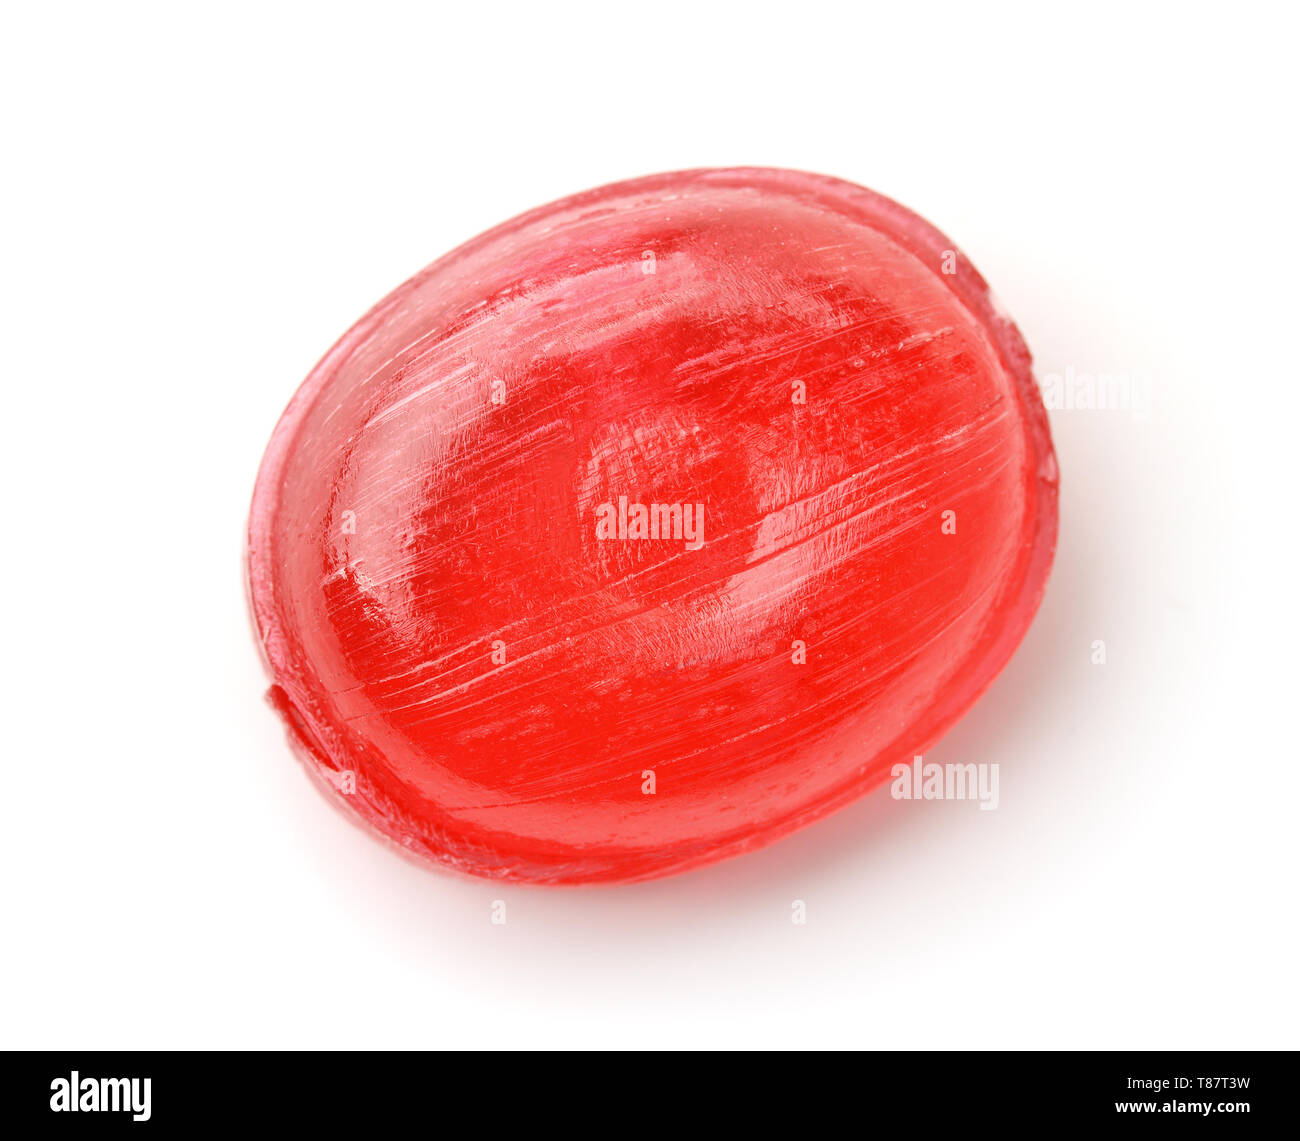 Vue de dessus de la sucrerie dure rouge isolated on white Banque D'Images